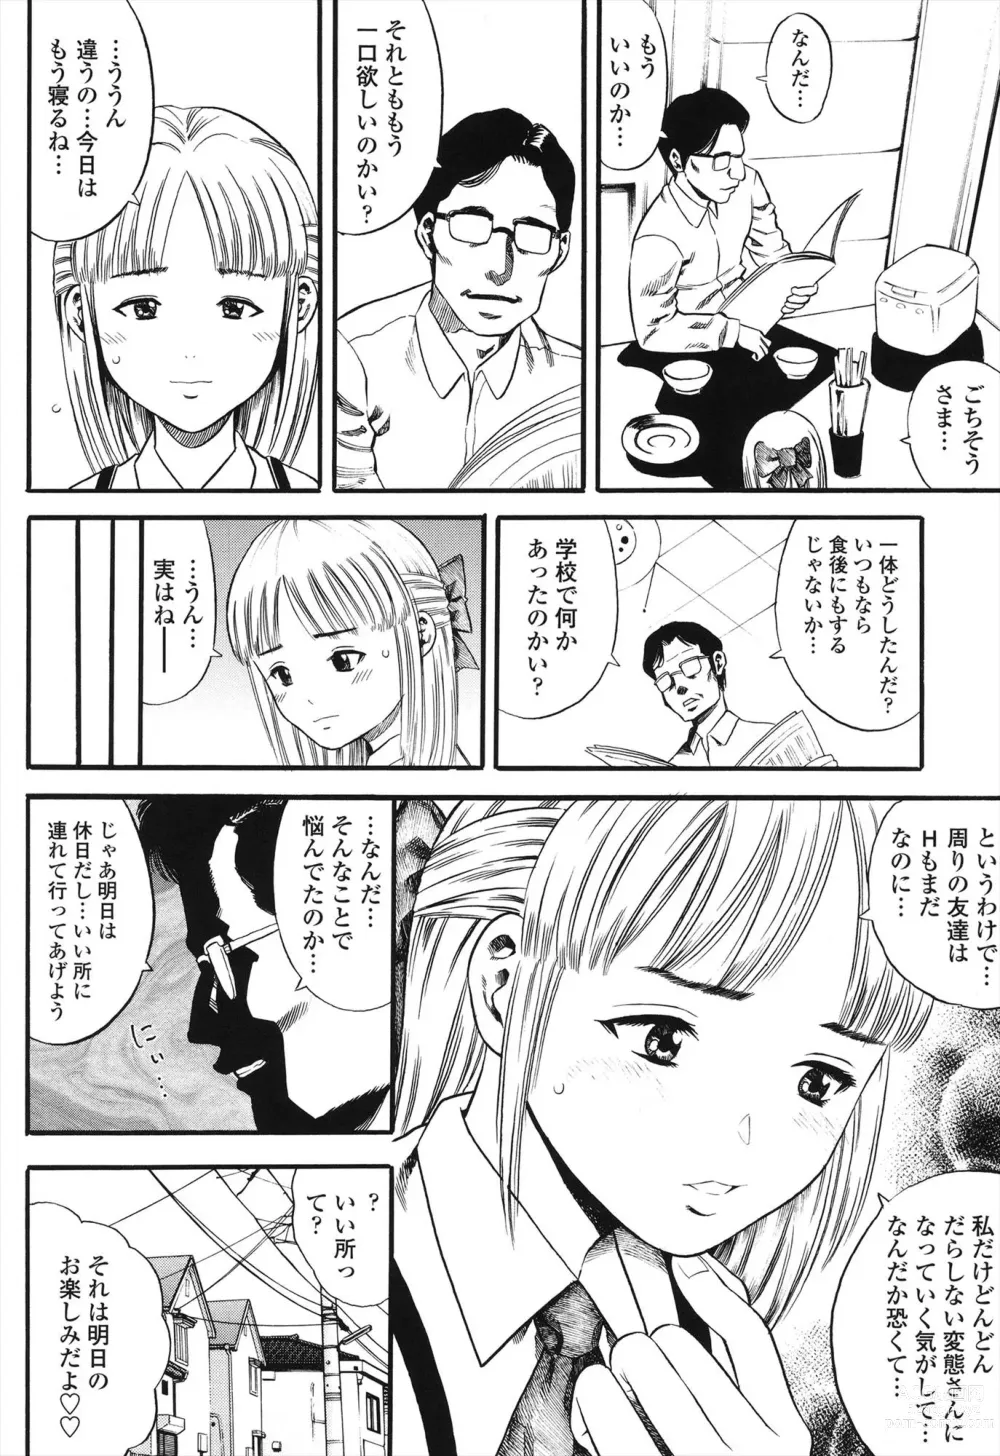 Page 10 of manga Shogaku Gakusei